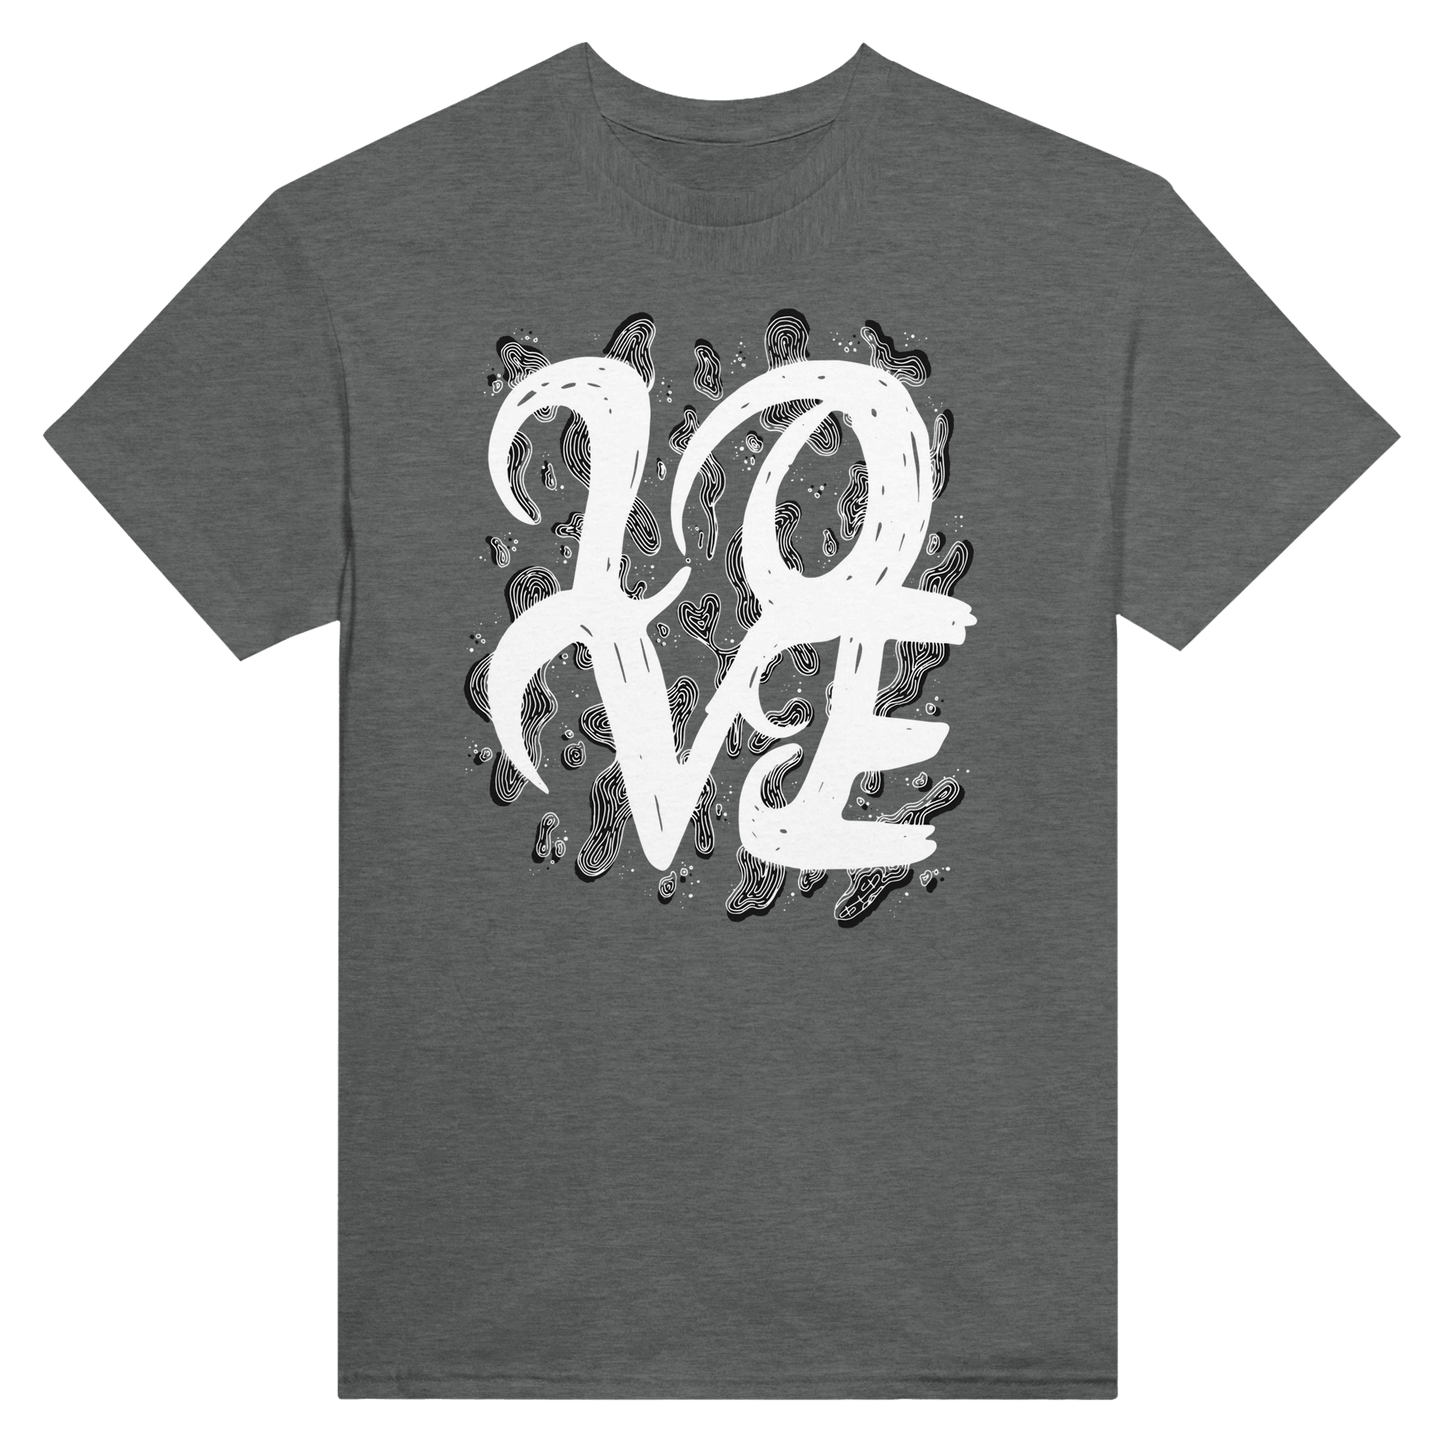 L.O.V.E - Heavyweight Unisex Crewneck T-shirt apparel Graphite Heather / S